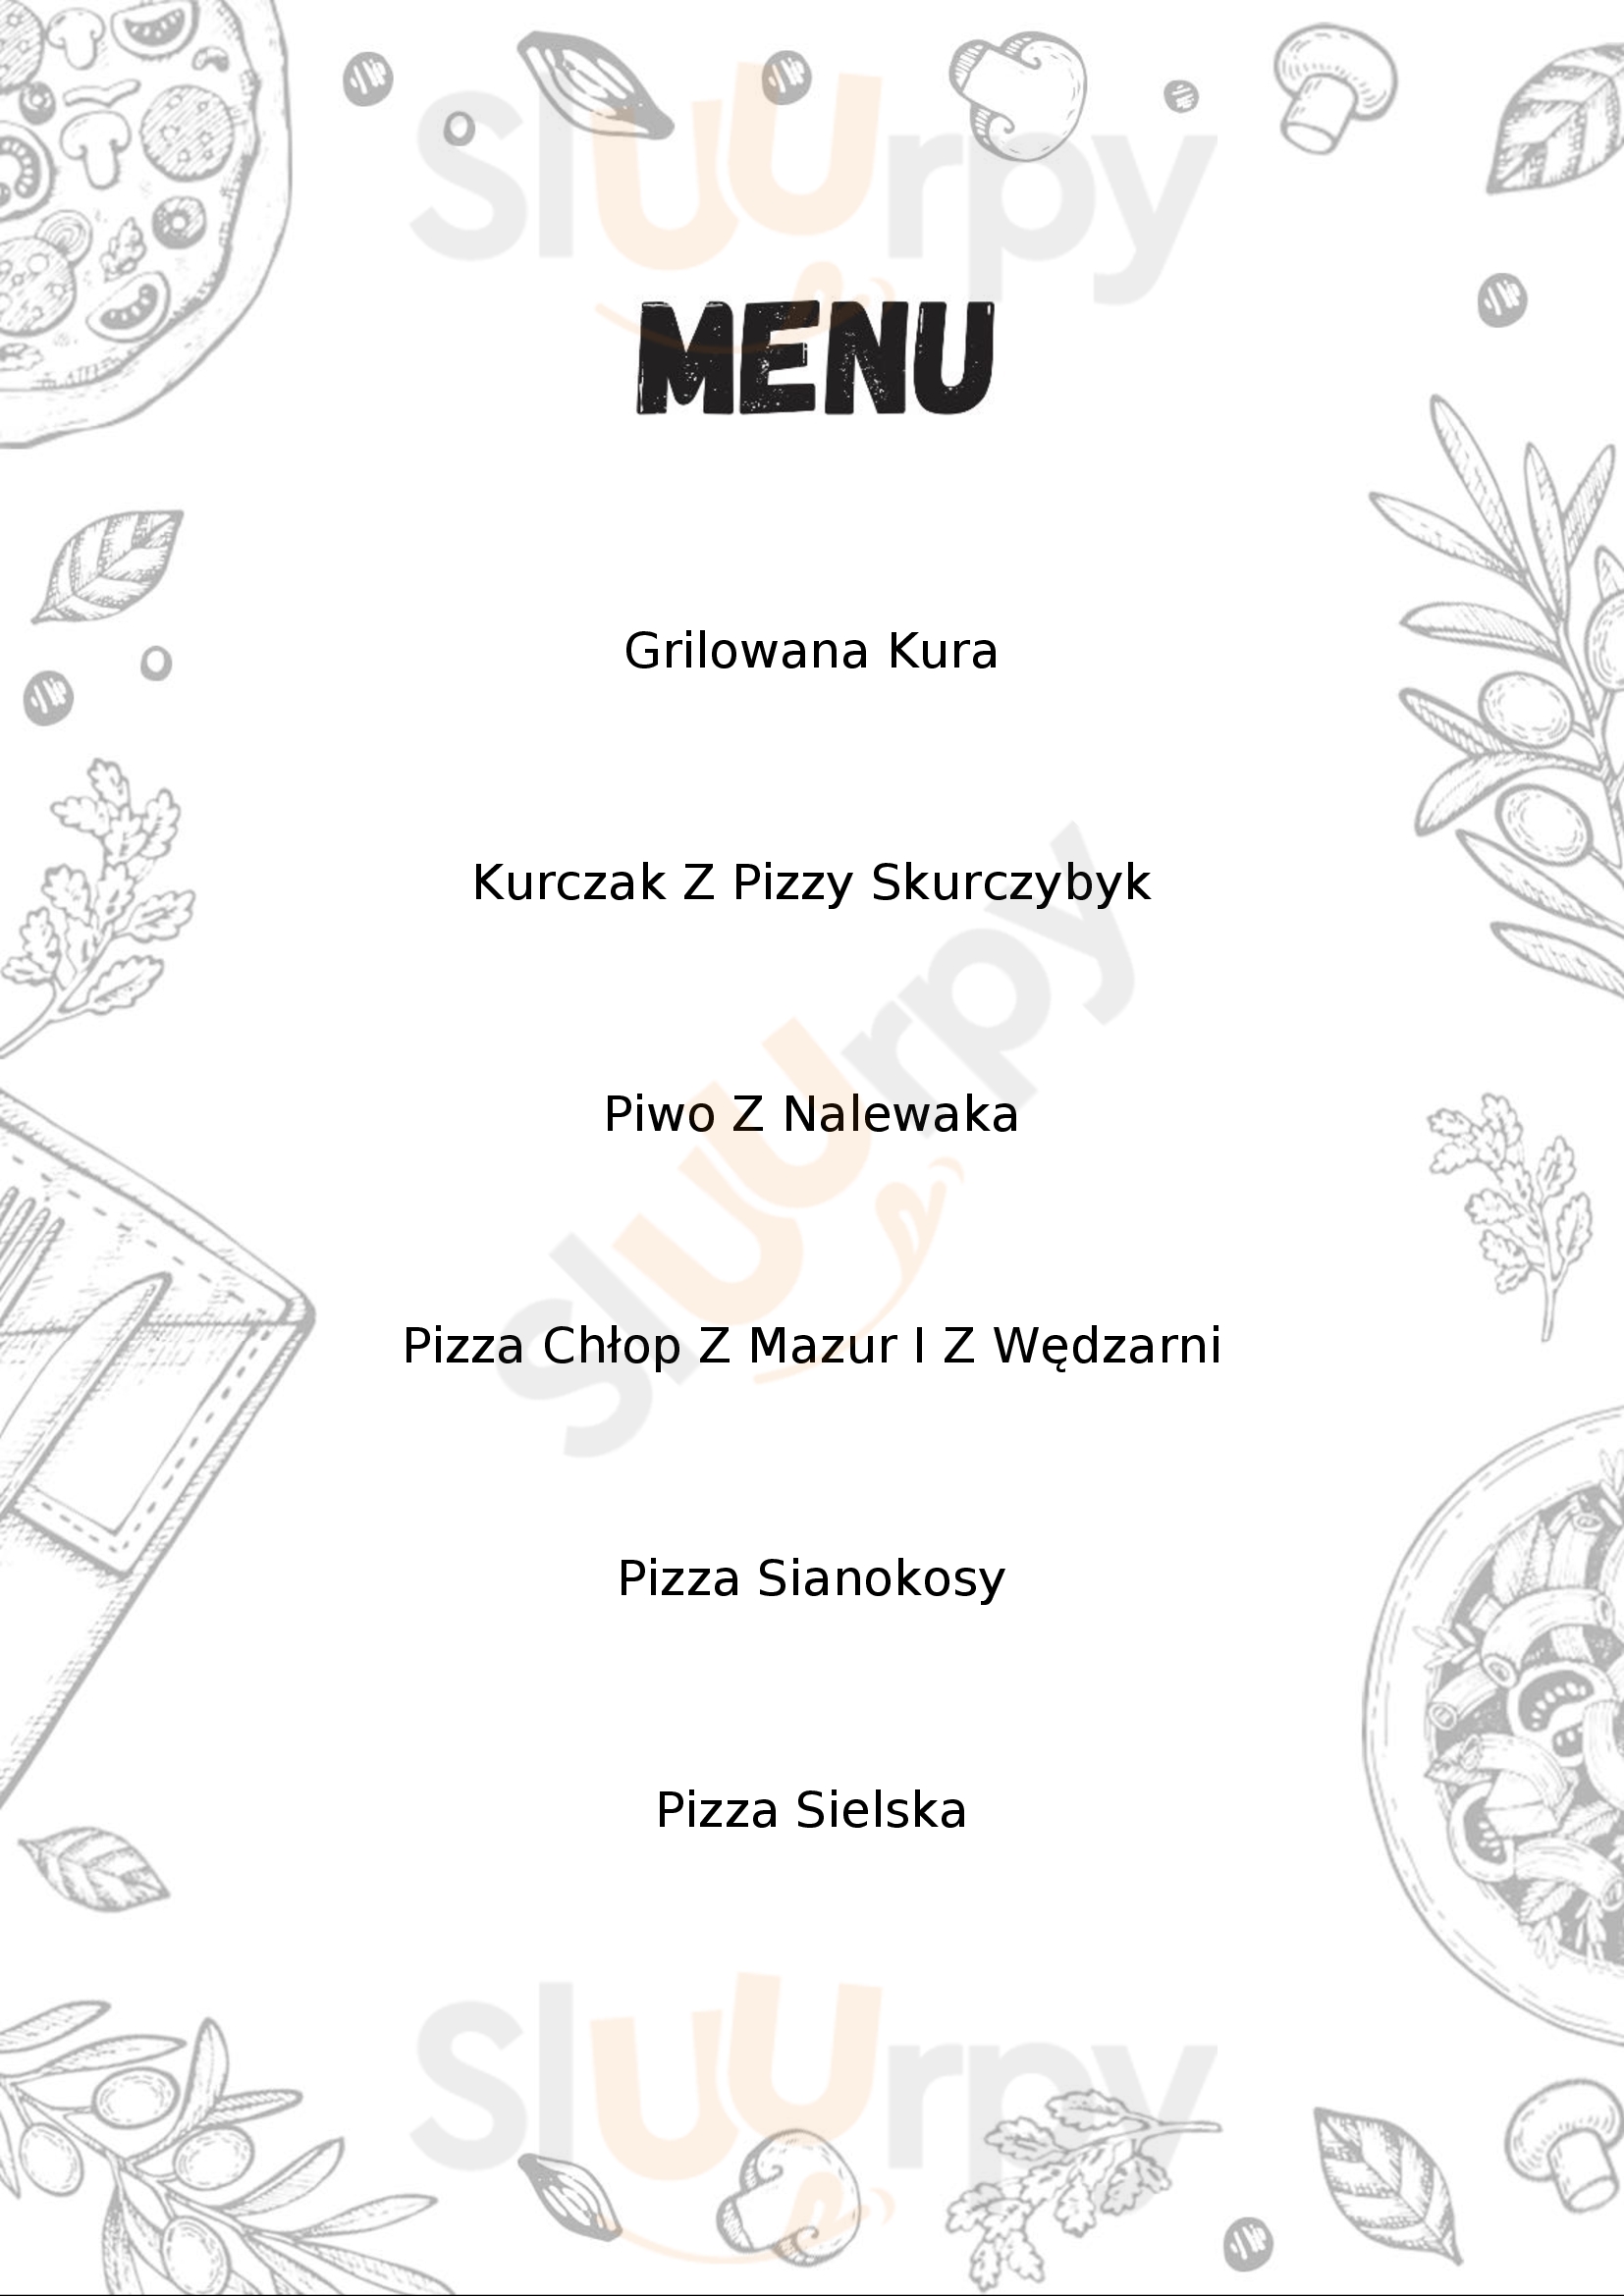 Sioło Pizza Białystok Menu - 1